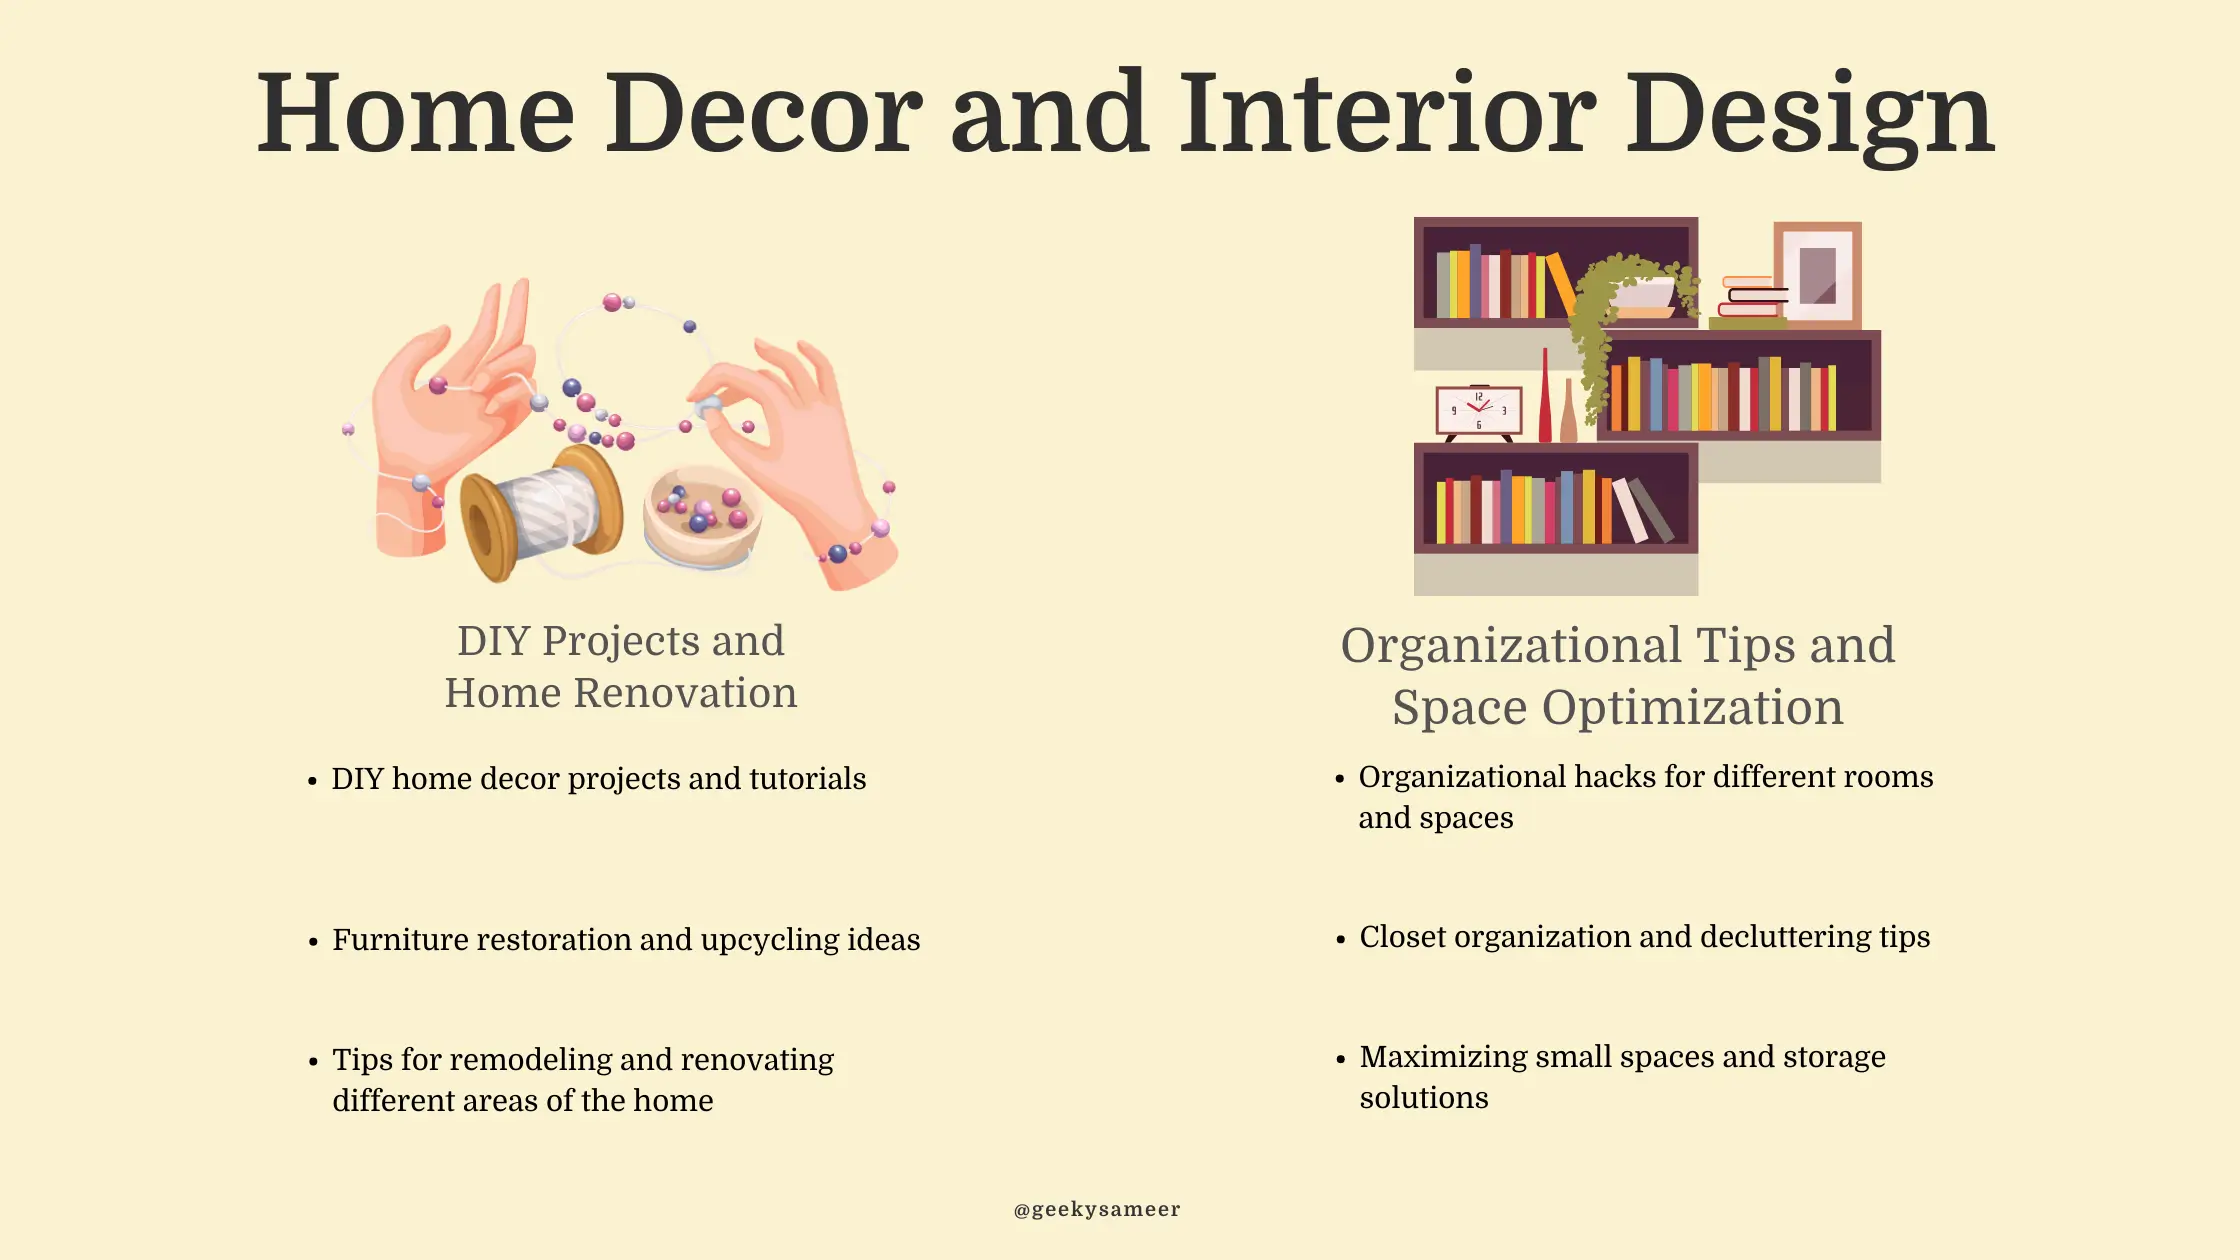 blogging niches for Home Decor and Interior Design